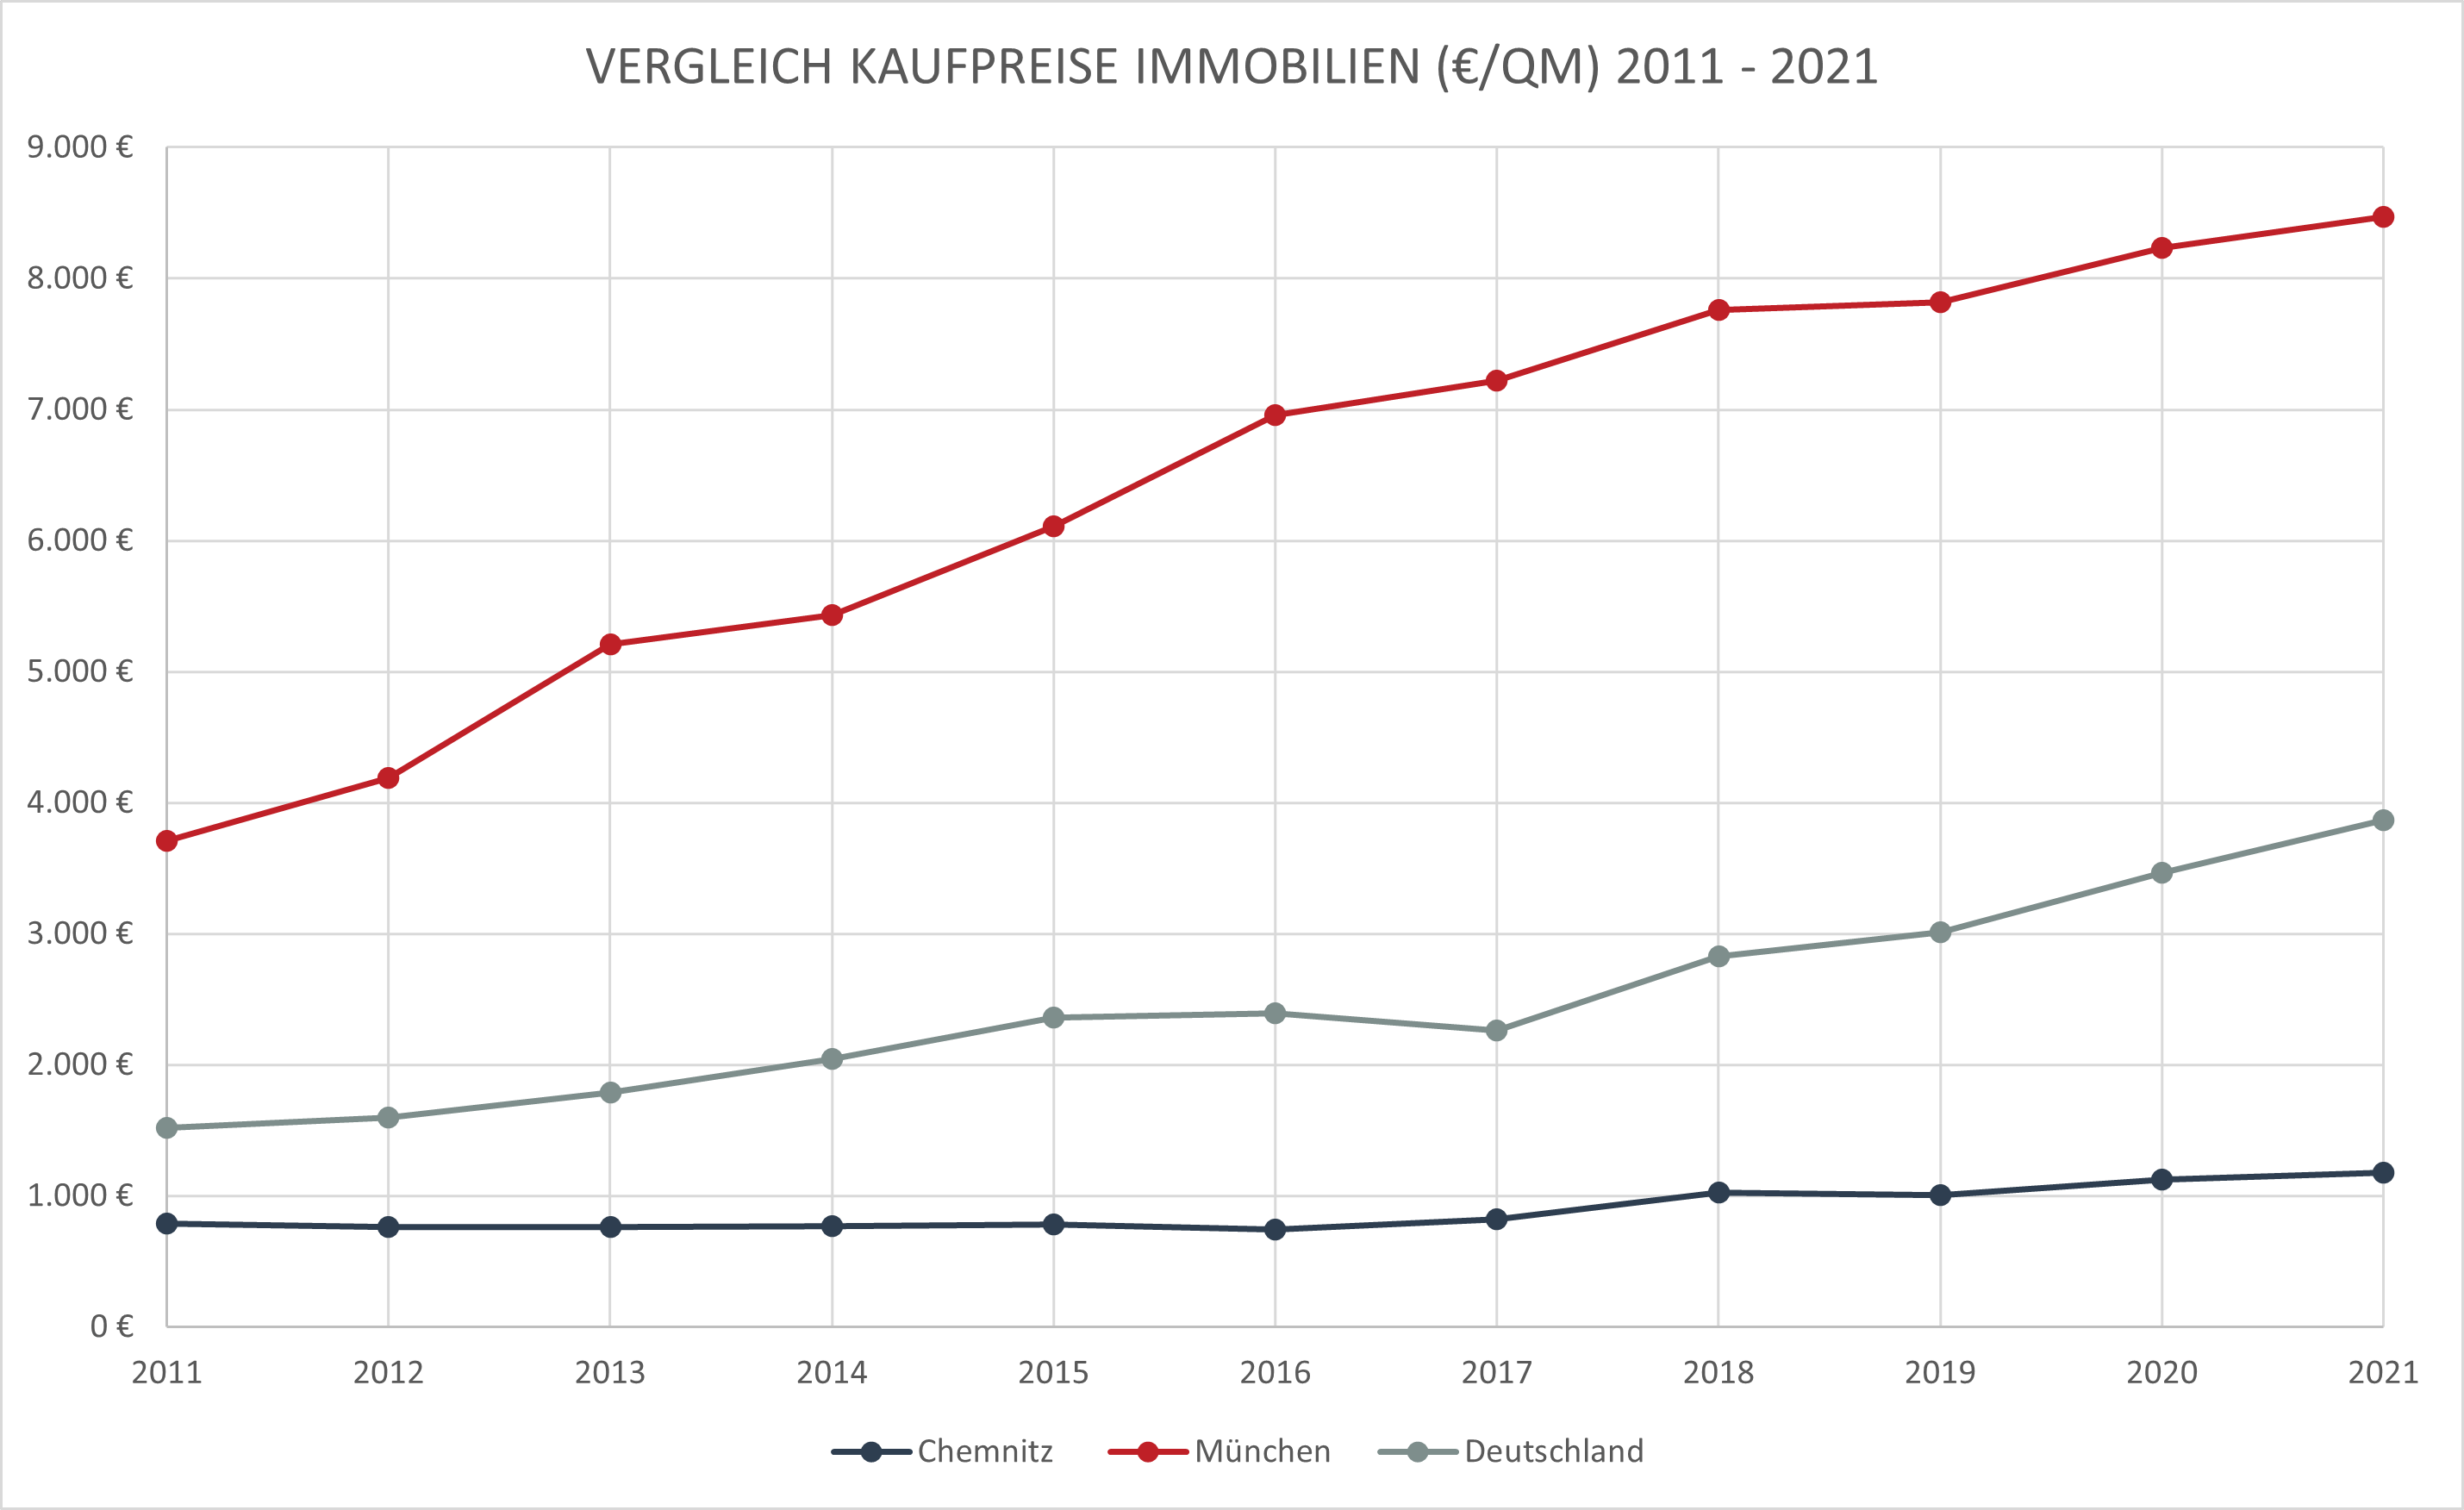 Darstellung der absoluten Kaufpreise von Immobilien zwischen 2011 - 2021 für Chemnitz, München und Deutschland.